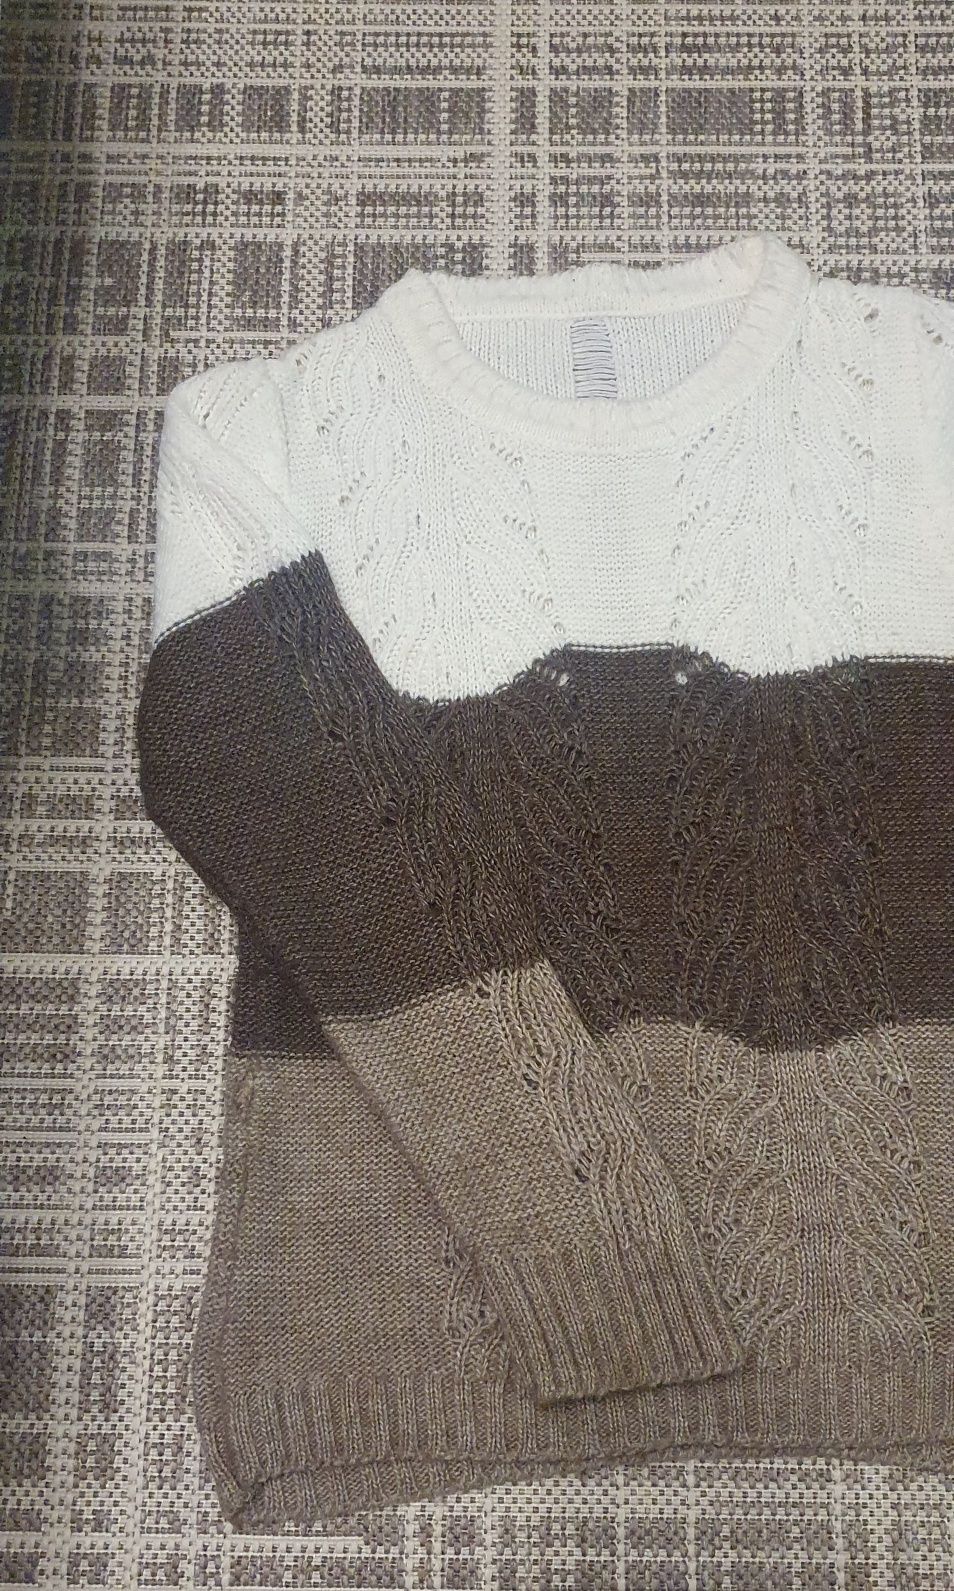 Жіночий в'язаний светр